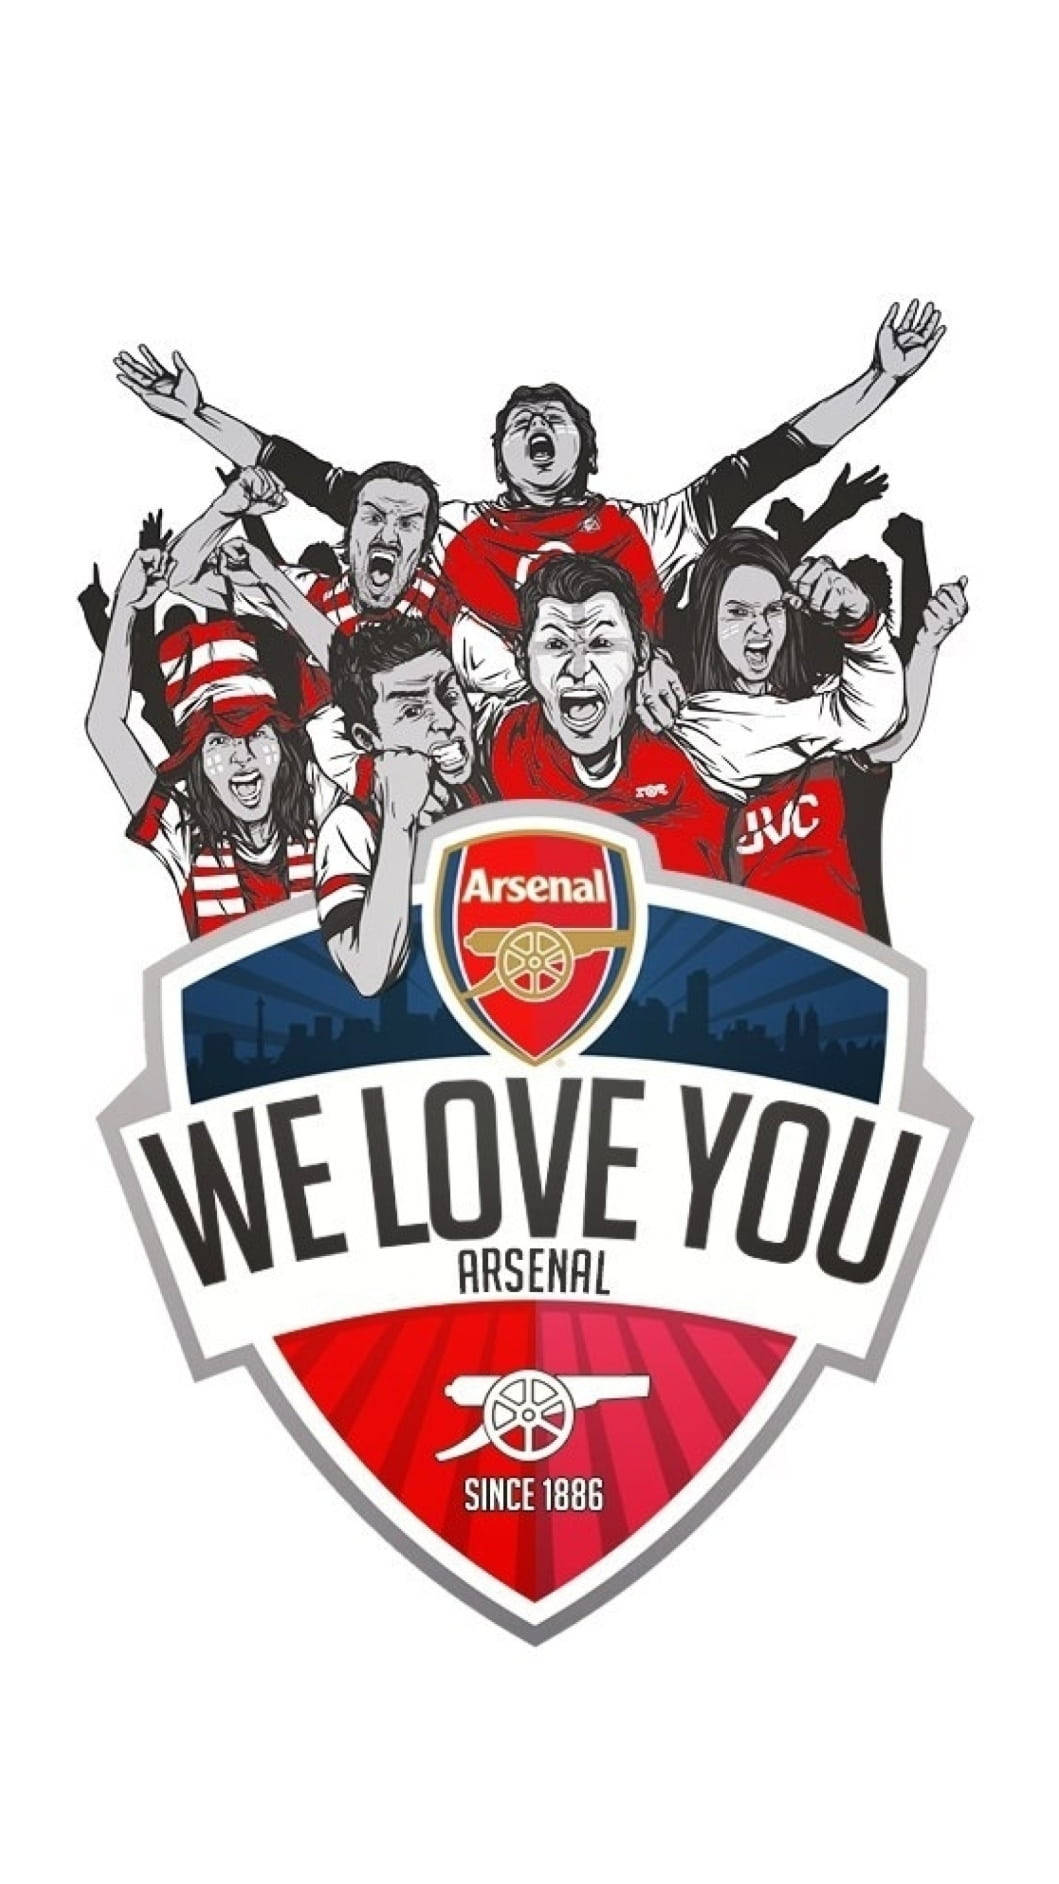 Arsenalfc Digital Art: Arsenal Fc Digitala Konstverk Wallpaper